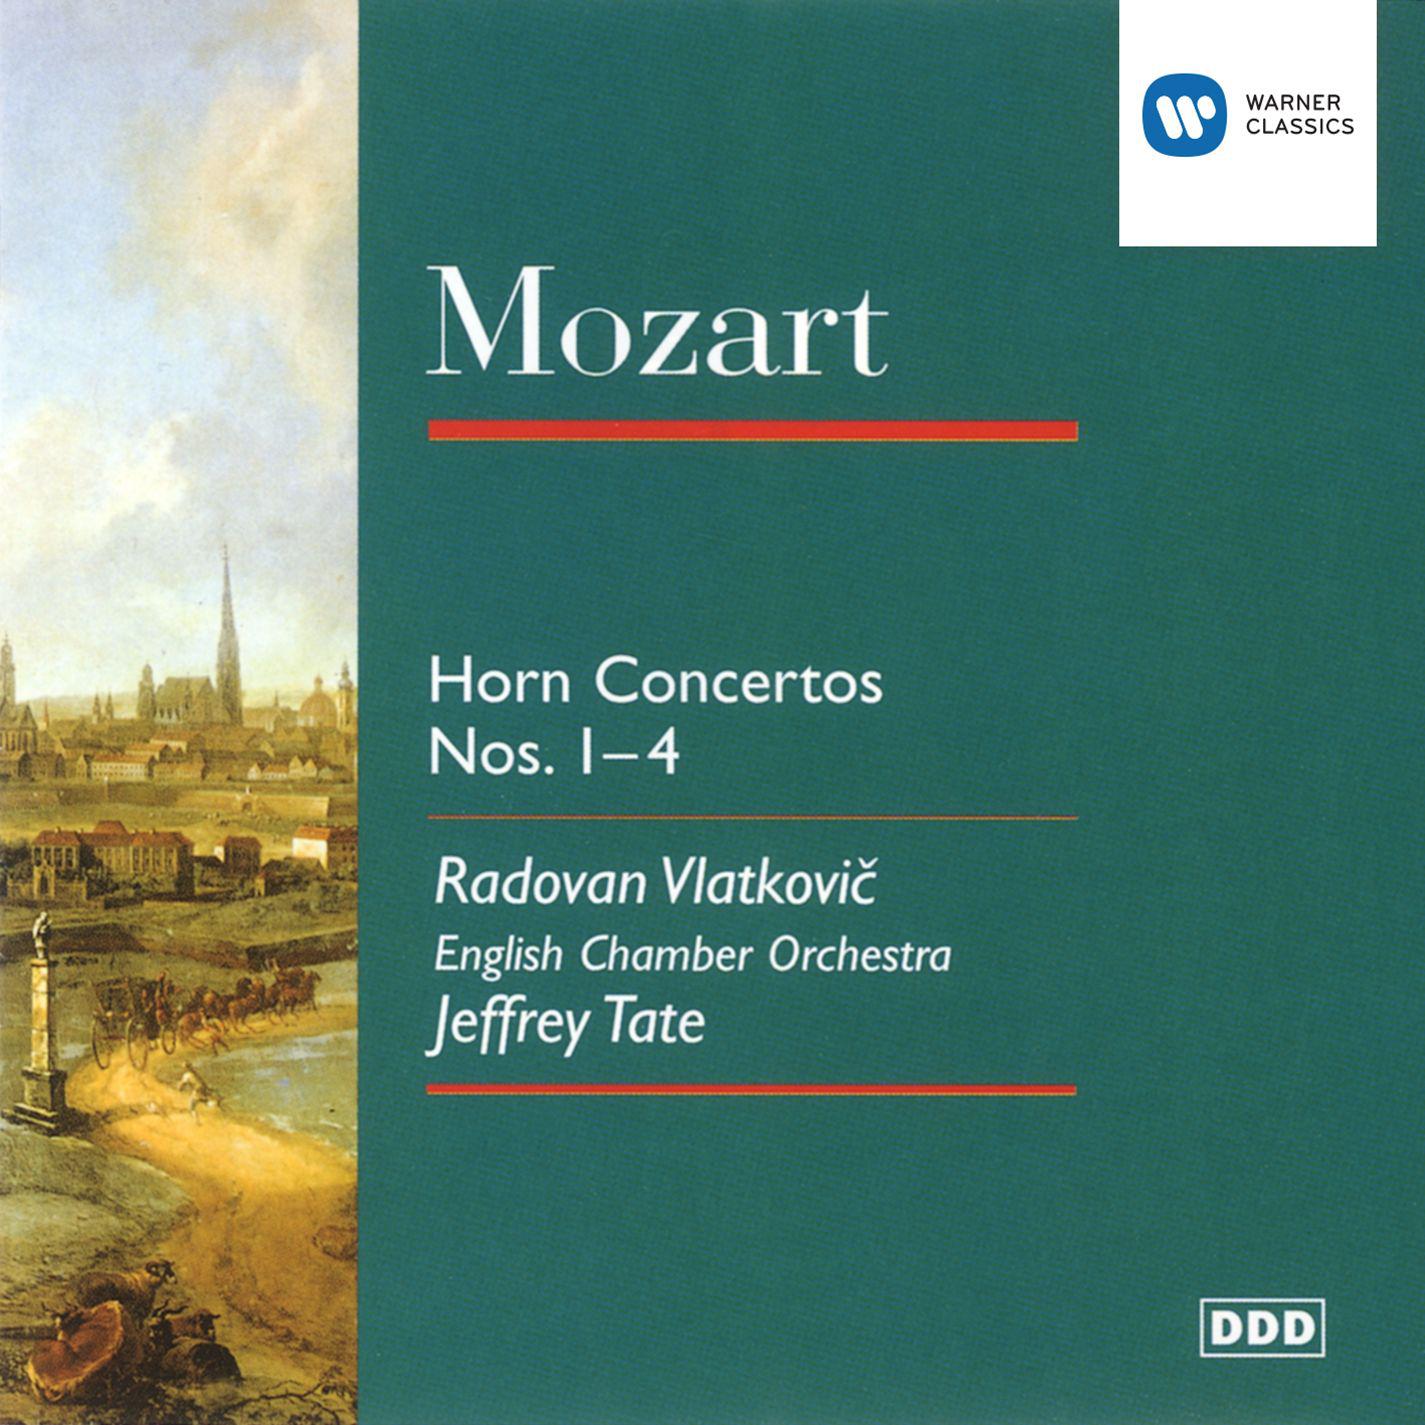 Horn Concerto No. 4 in E Flat, K.495: I. Allegro moderato